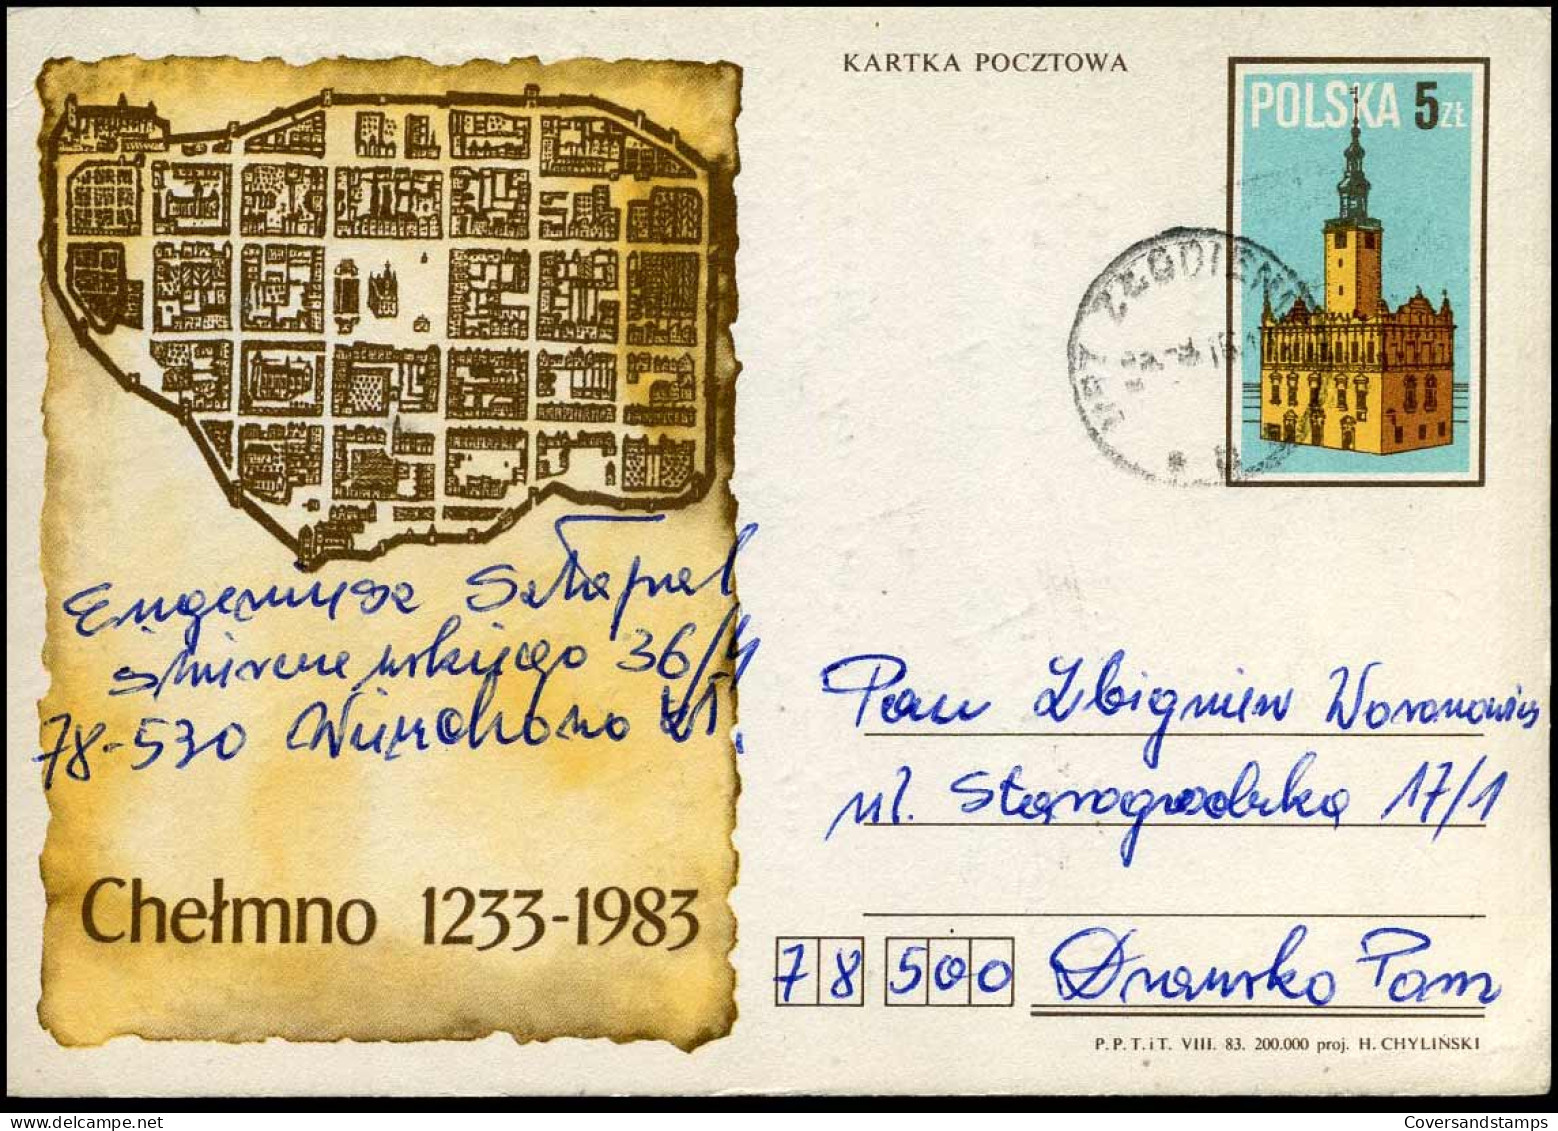 Postcard - Cartas & Documentos